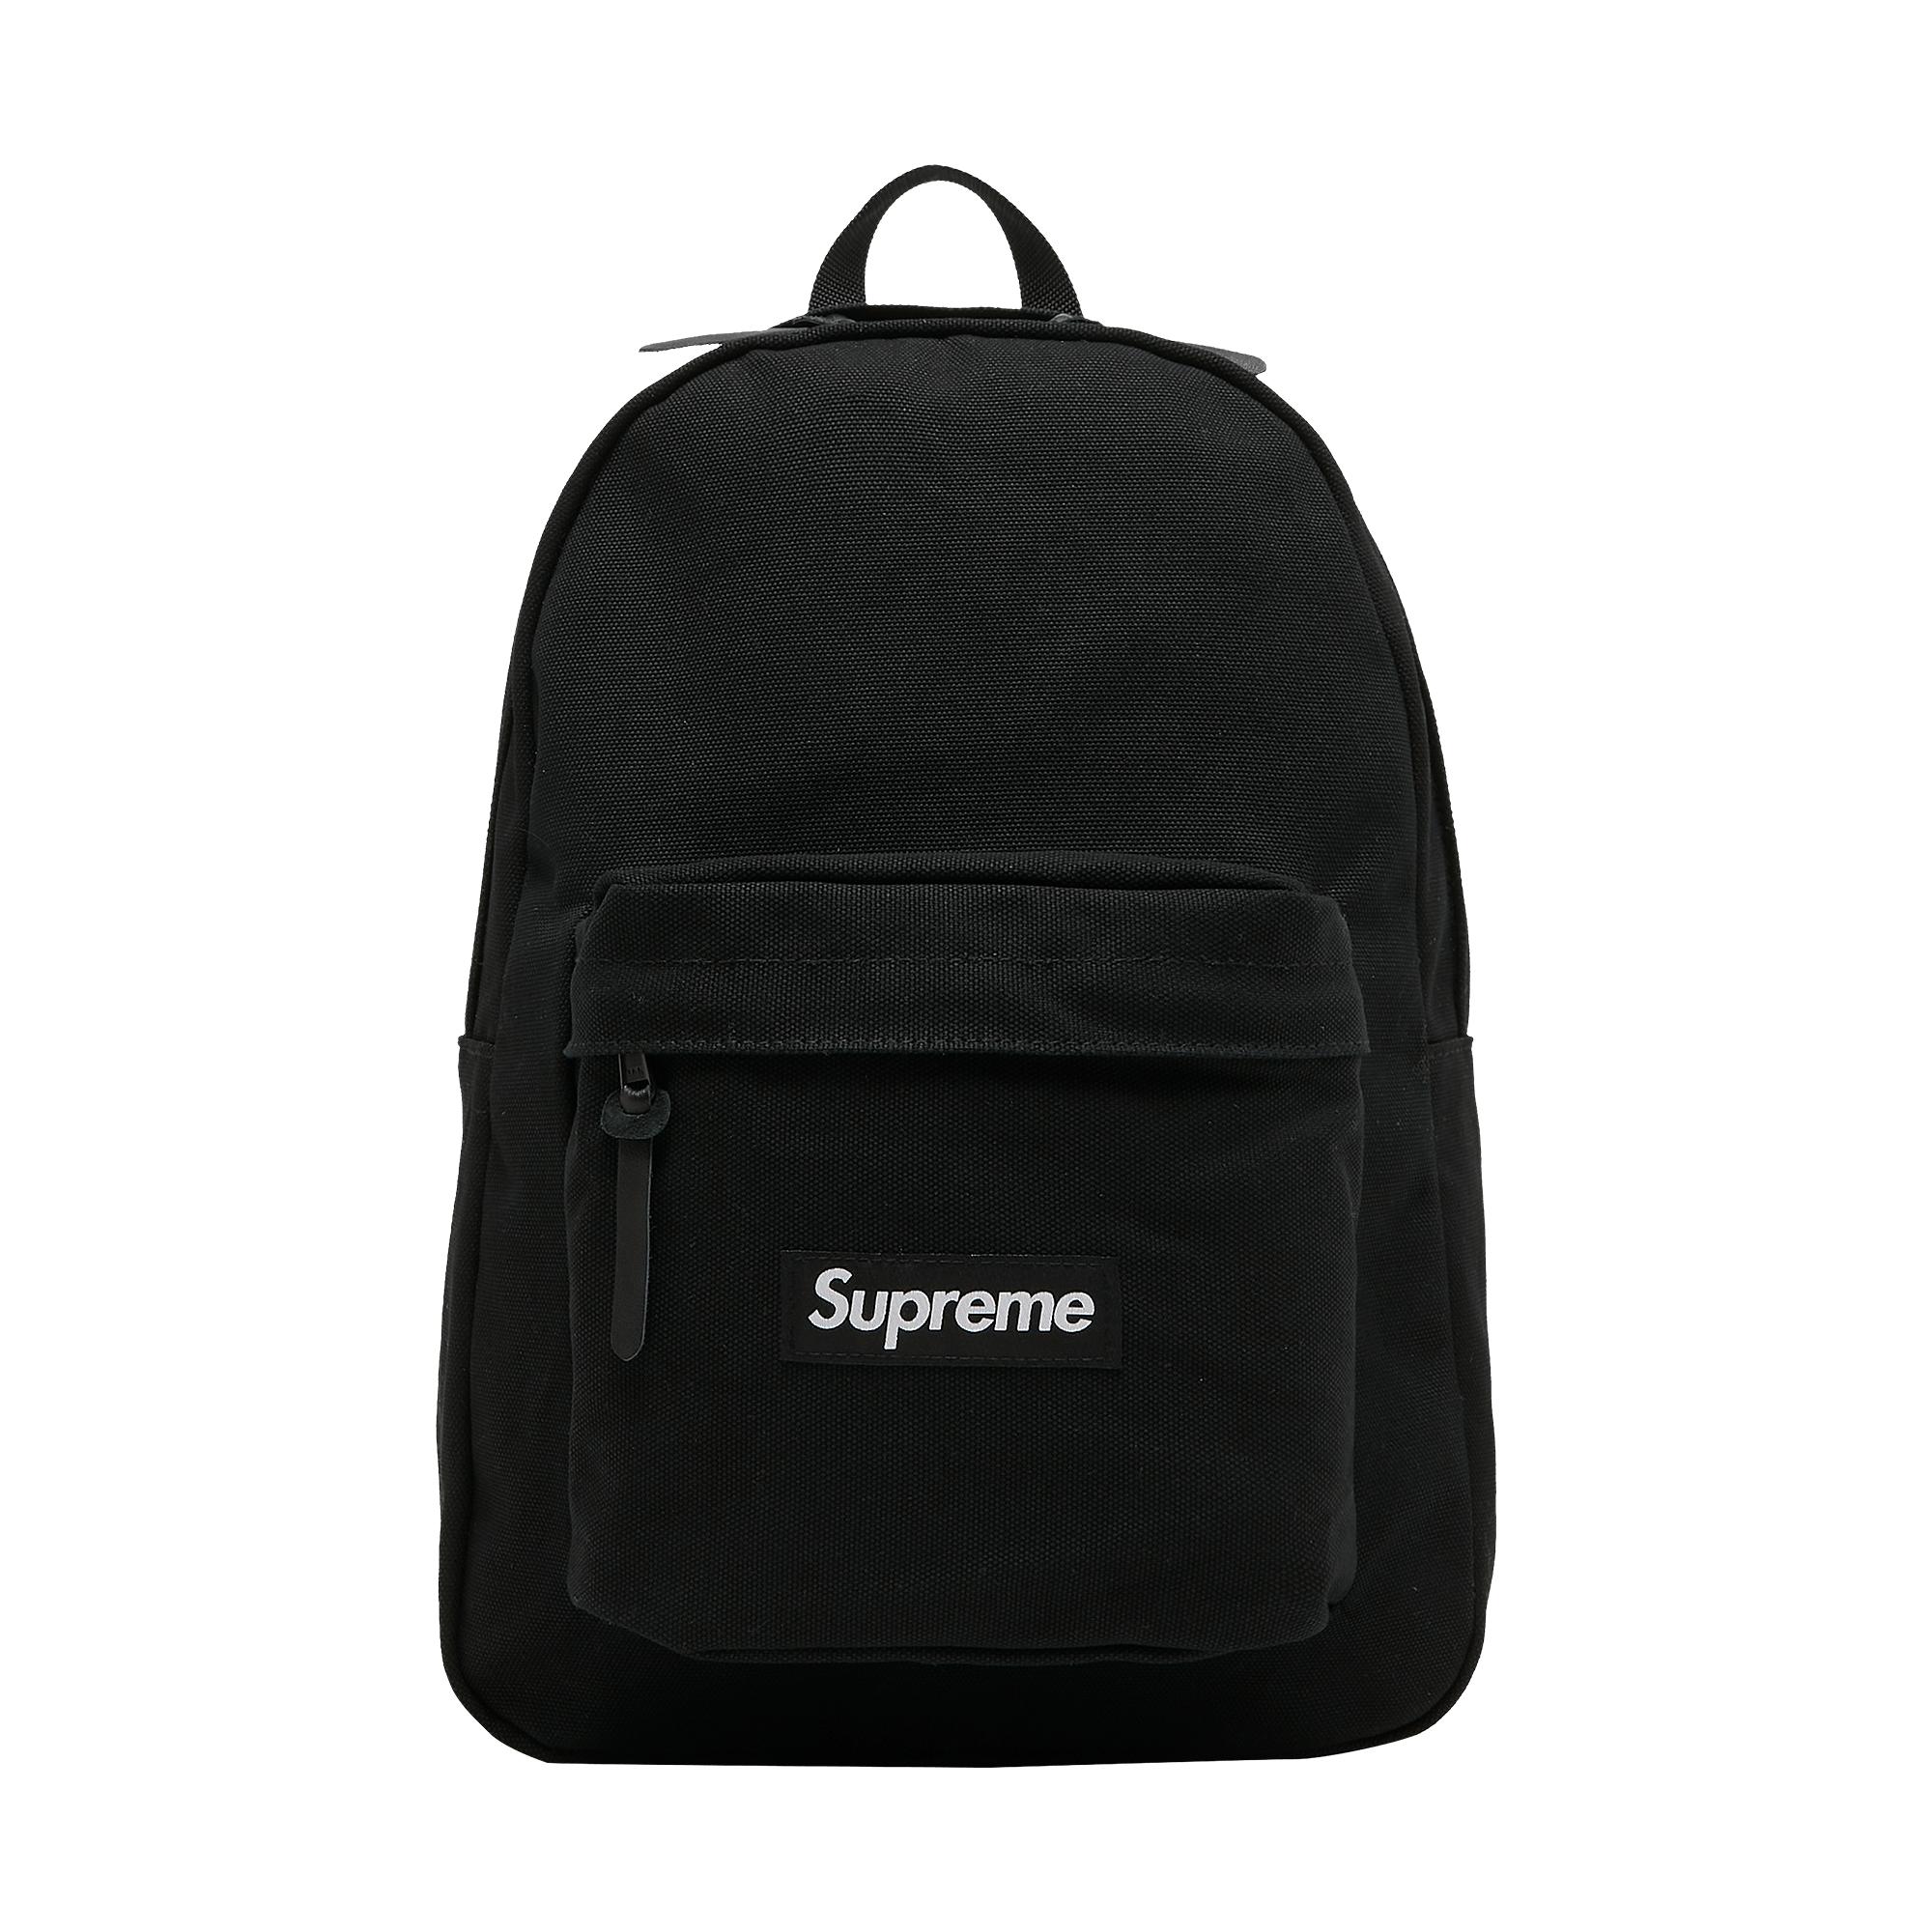 Supreme Canvas Backpack 'black' for Men | Lyst